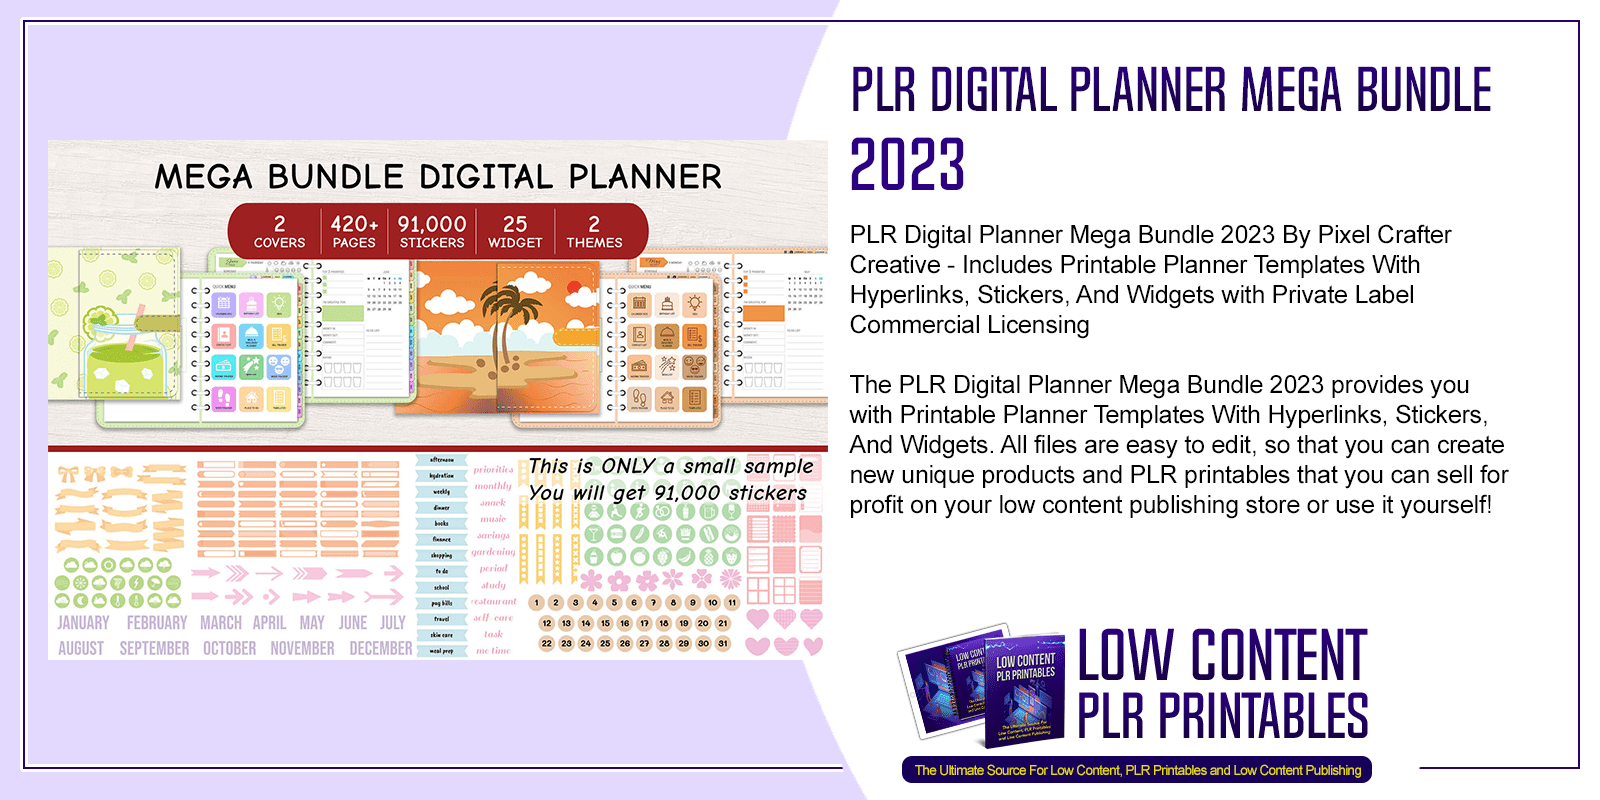 PLR Digital Planner Mega Bundle 2023